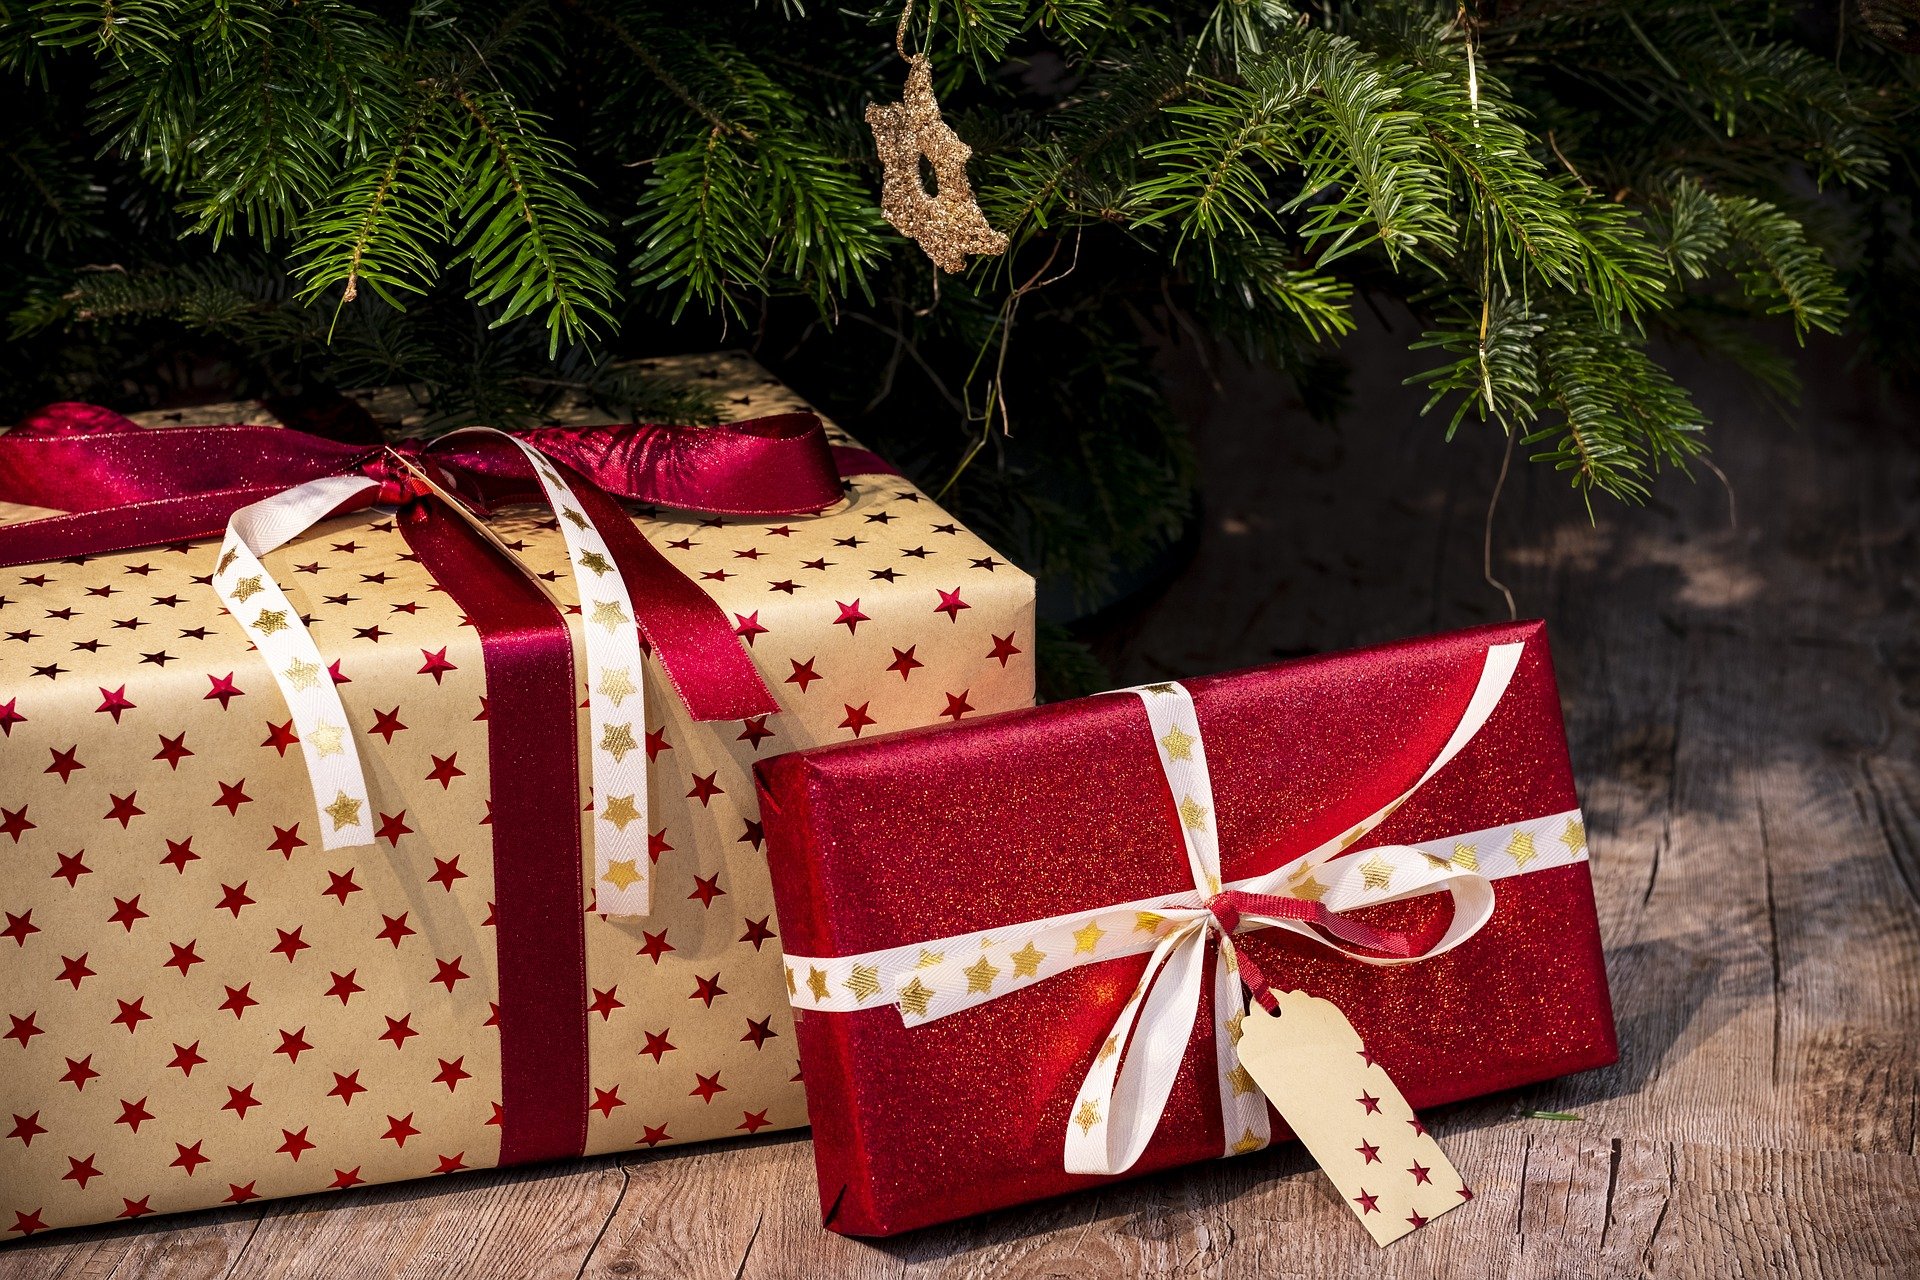 Lire la suite à propos de l’article Idée Cadeau : Pour Noël, pensez au chèque cadeau Cyclexperts !